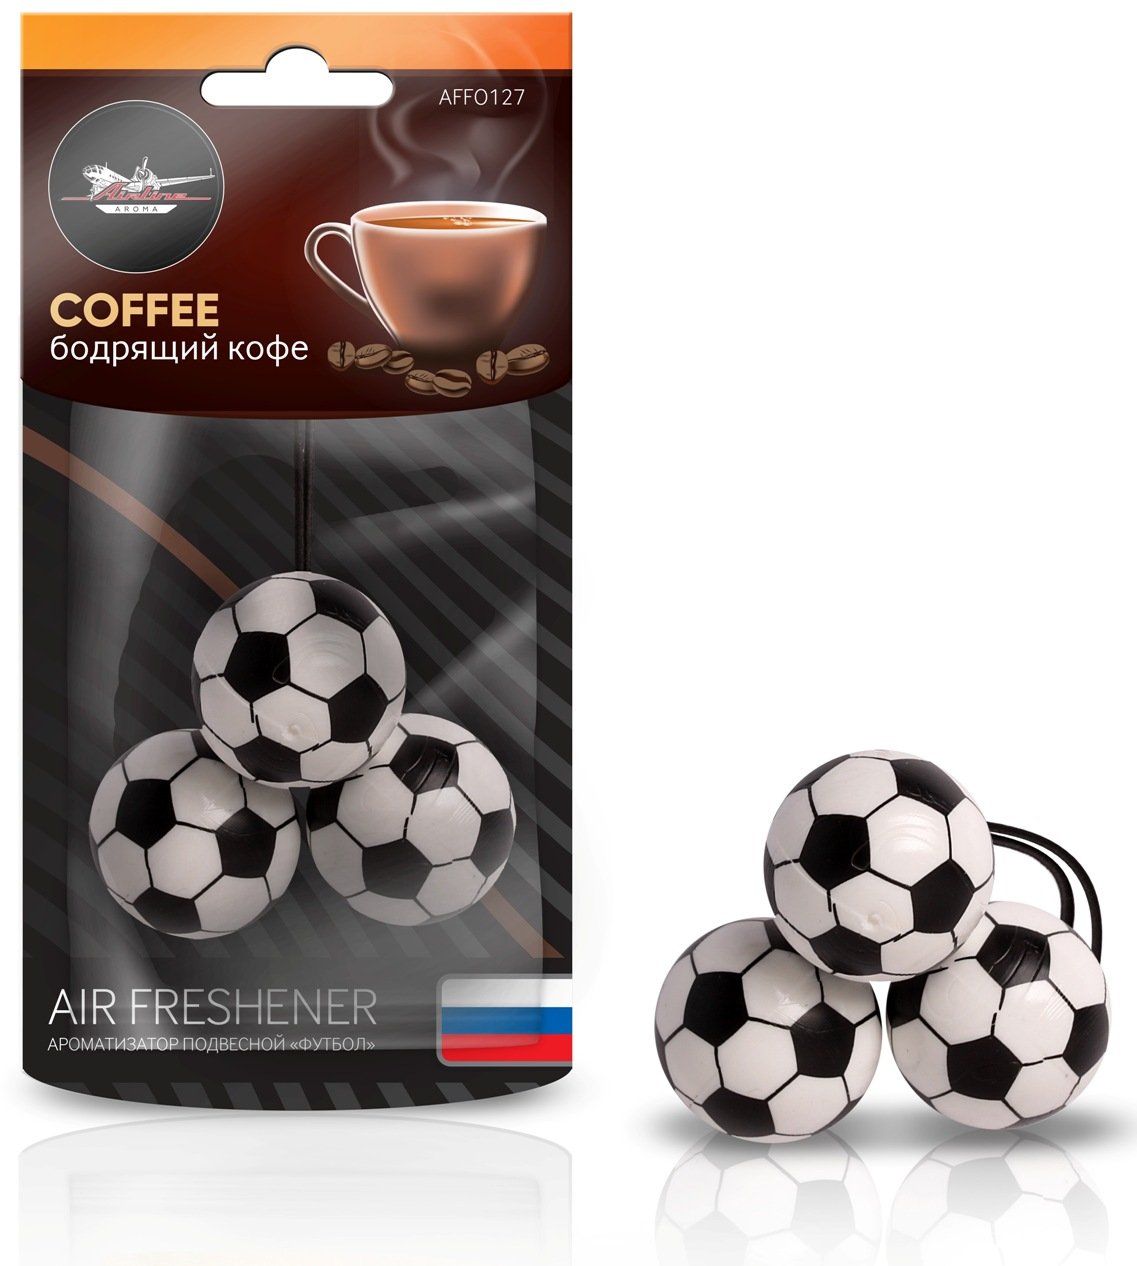 Ароматизатор подвесной Футбол Бодрящий кофе AIRLINE AFFO127